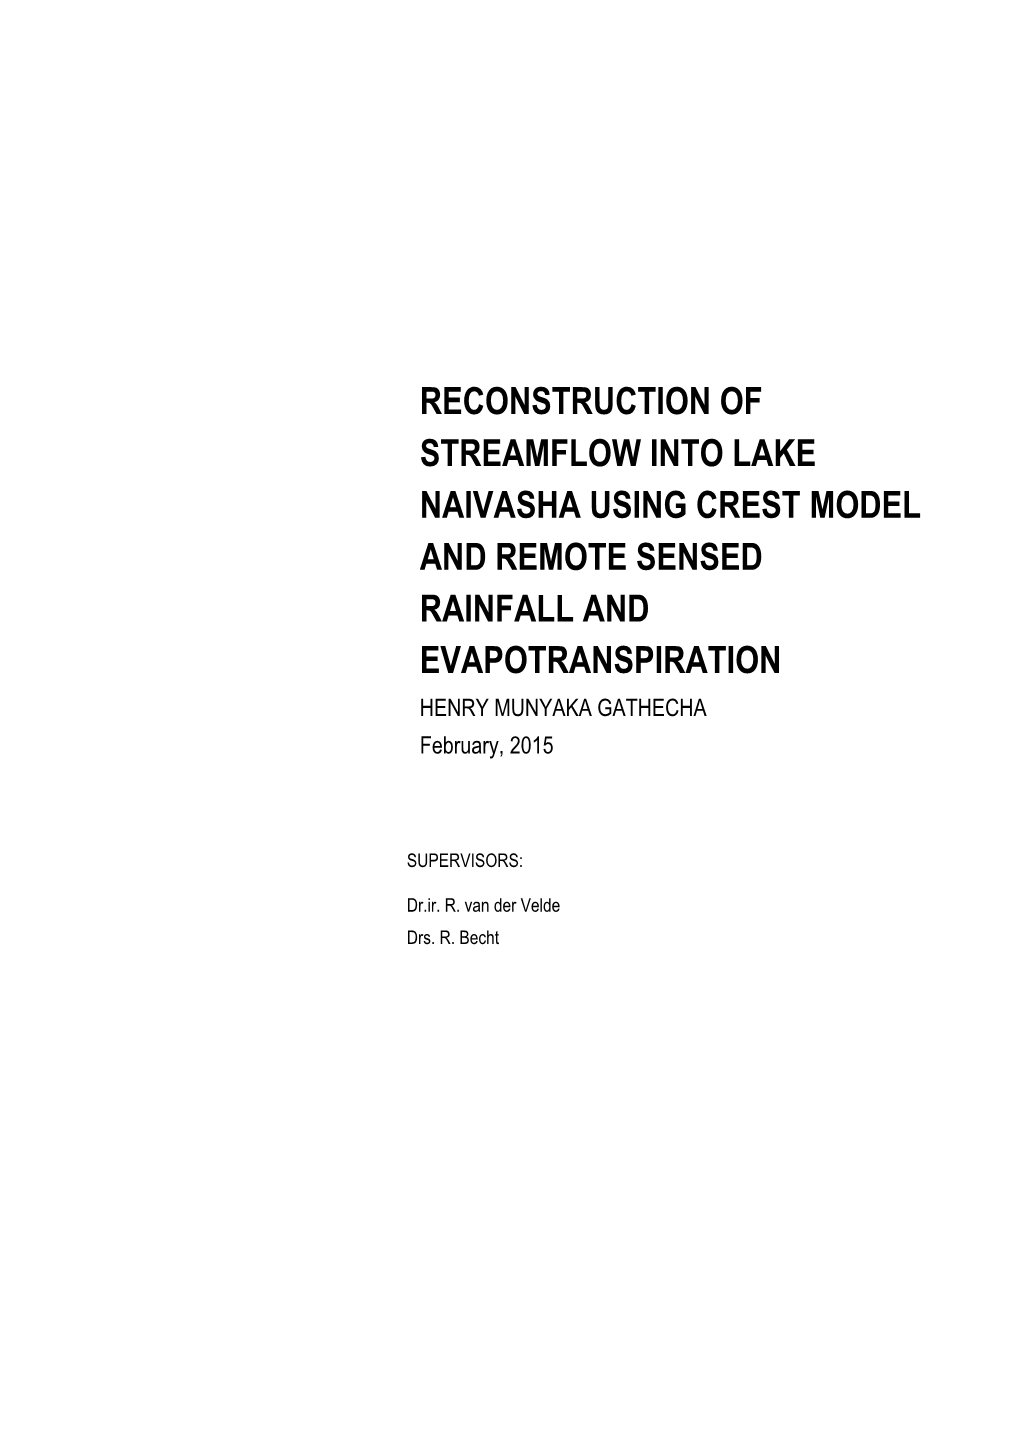 RECONSTRUCTION of STREAMFLOW INTO LAKE NAIVASHA USING CREST MODEL and REMOTE SENSED RAINFALL and EVAPOTRANSPIRATION HENRY MUNYAKA GATHECHA February, 2015